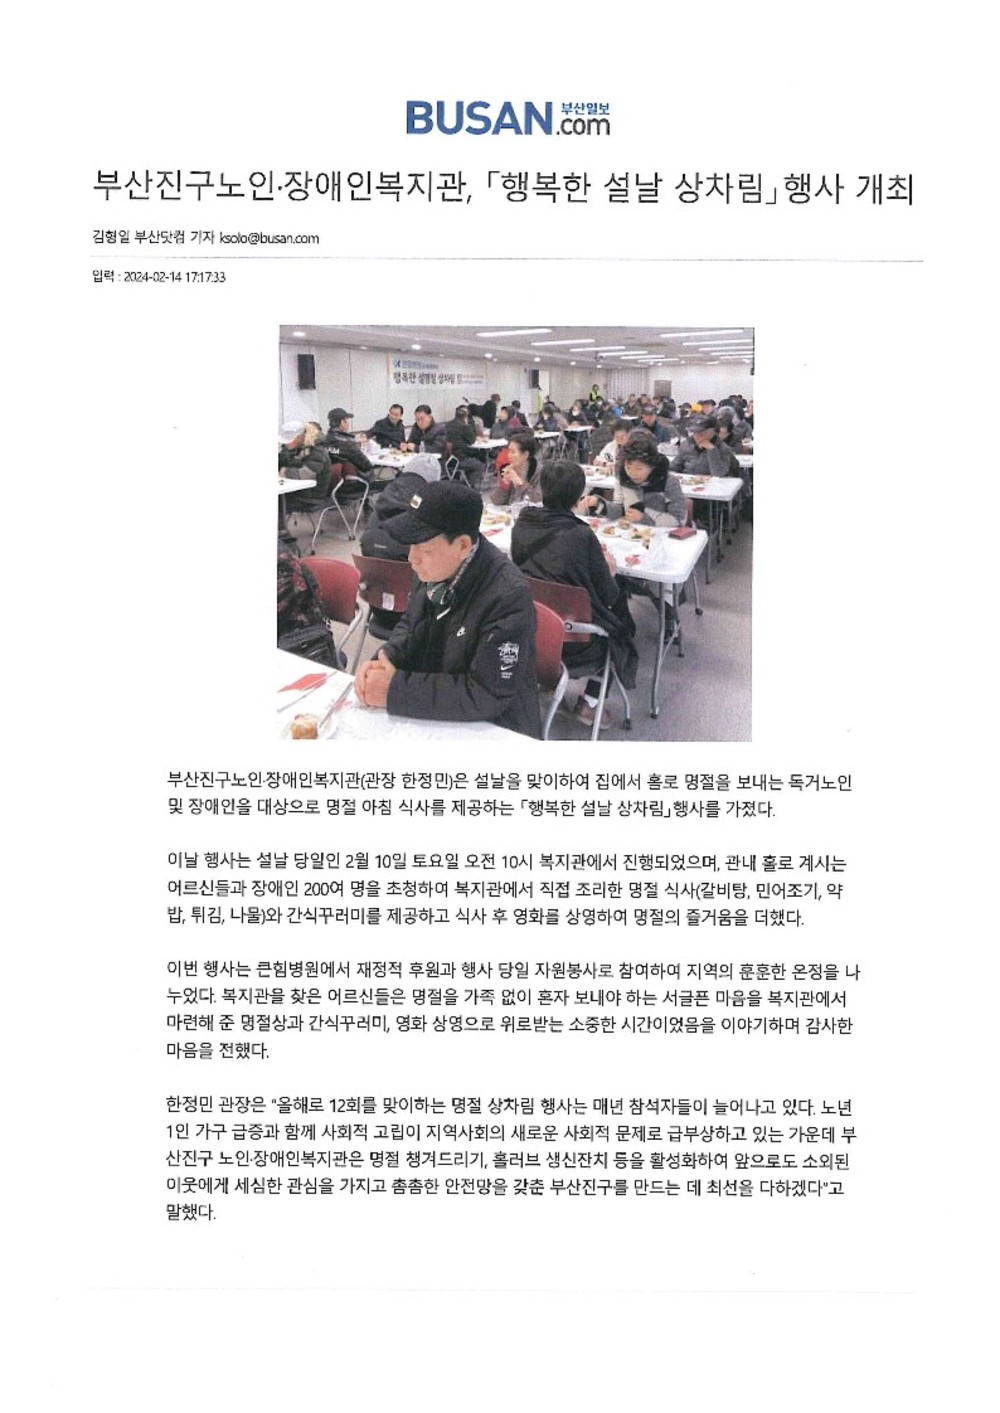 24.02.14.  부산진구노인?장애인복지관, 「행복한 설날 상차림」행사 개최_1.jpg